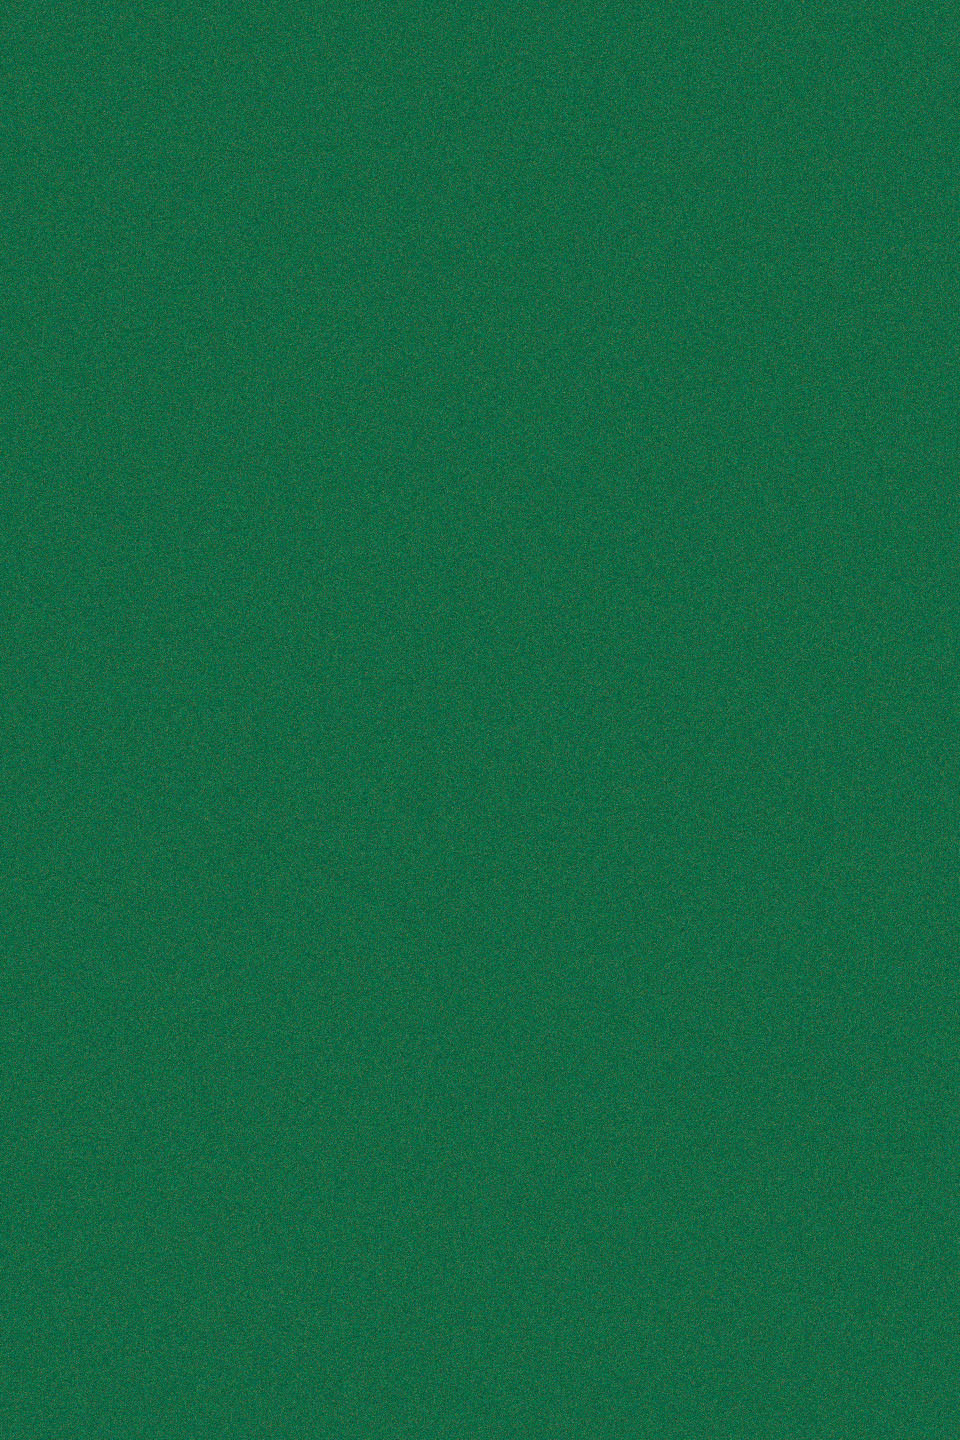 0003-348 D-C-fix 1х0.45м Пленка самоклеящаяся Велюр зеленый бильярдный жен костюм спортивный арт 24 0003 красный р 60